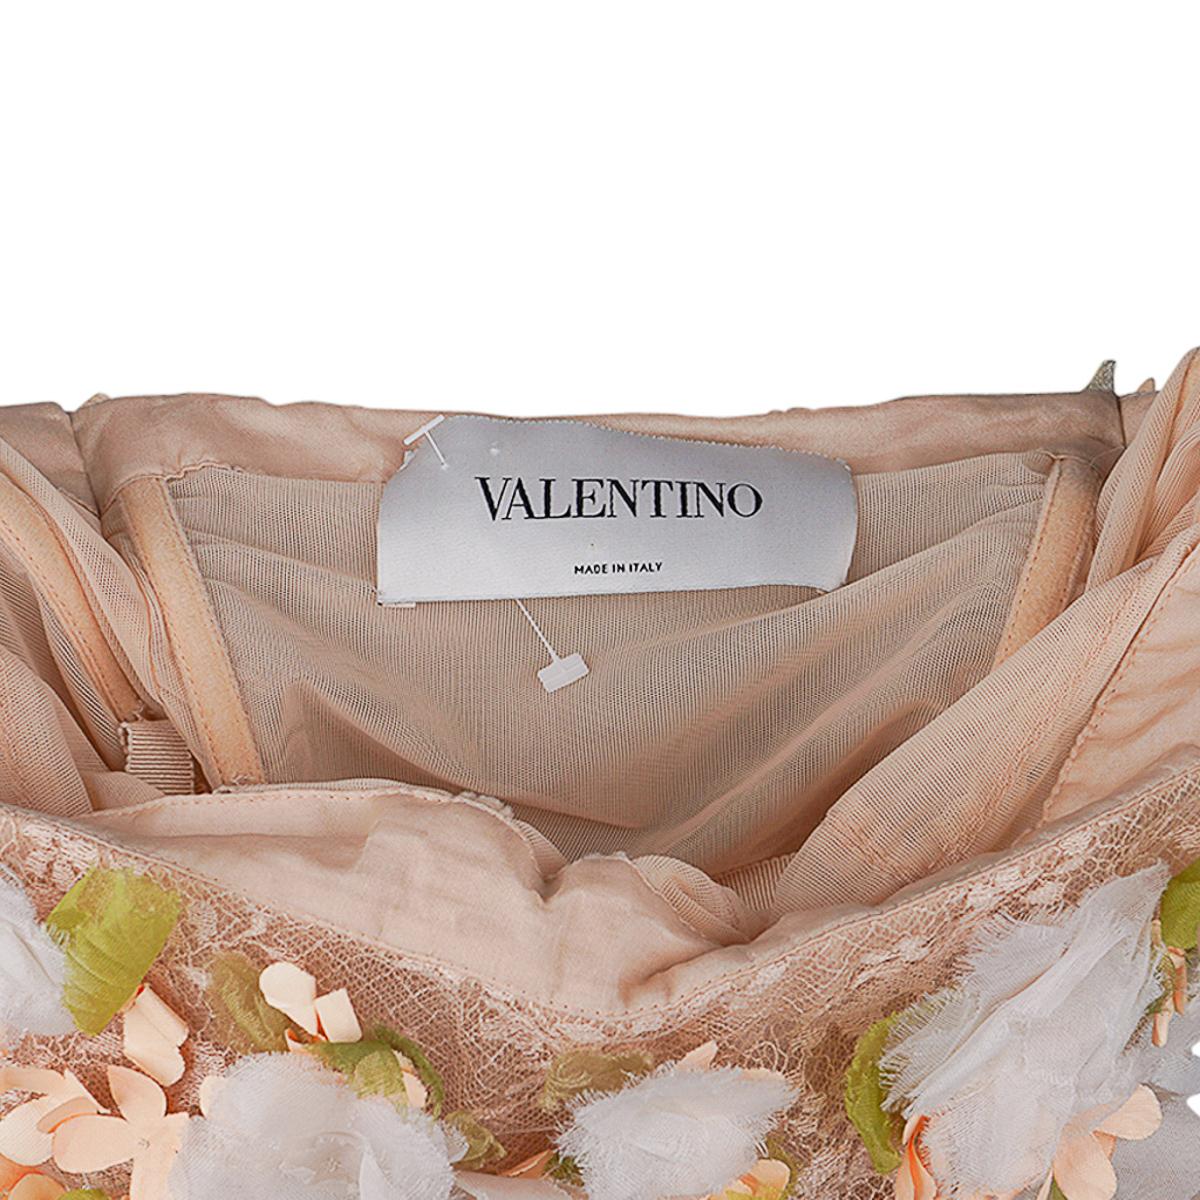 Valentino Trägerloses Empire-Kleid in Nude mit Blumenschmuck 1 von 2 Größe 0 13